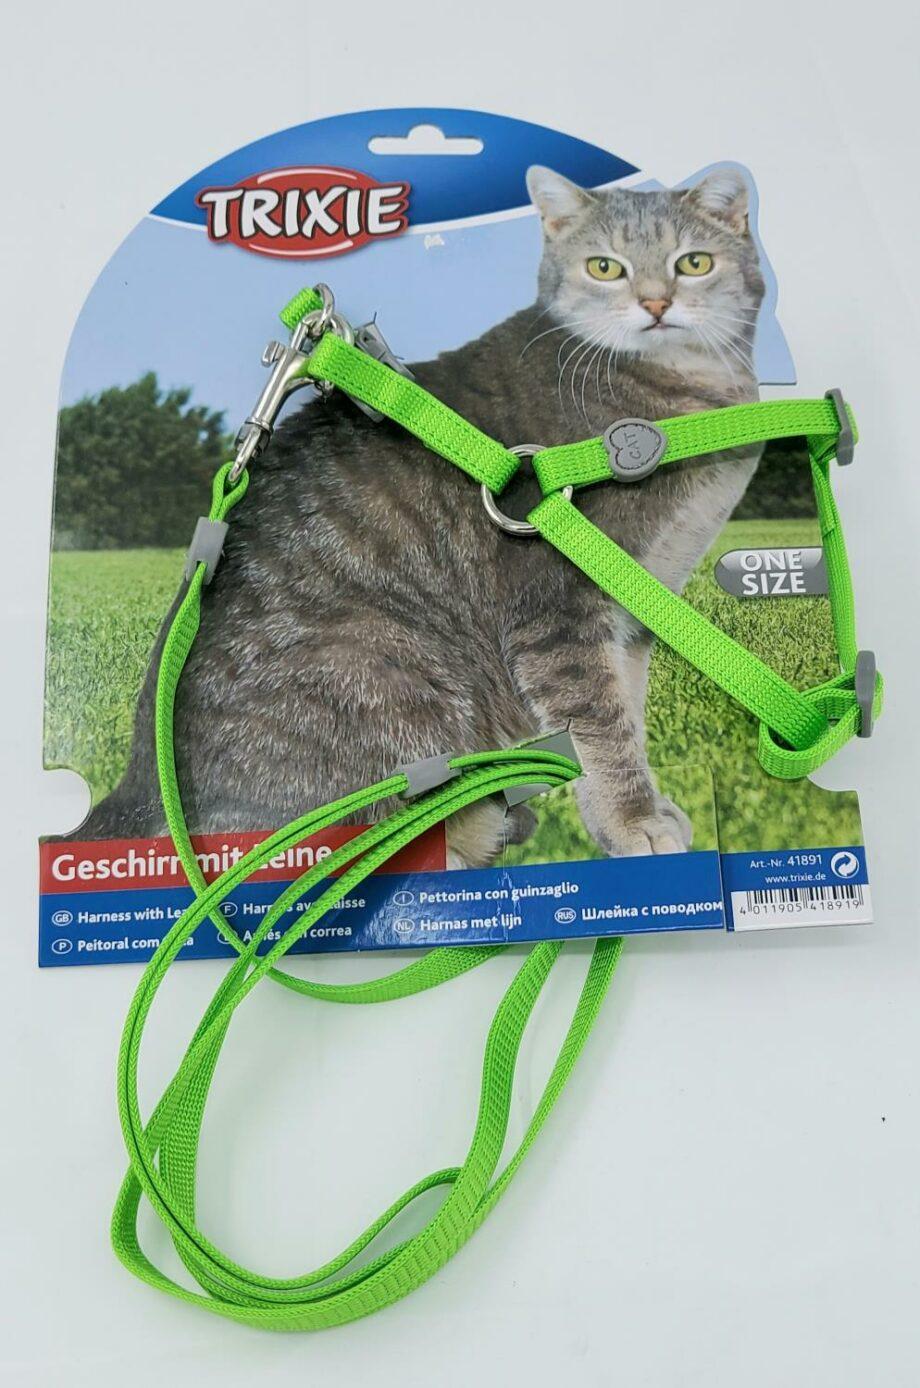 2051 64502 920x1388 - Trixie kattesele, One size, grønn